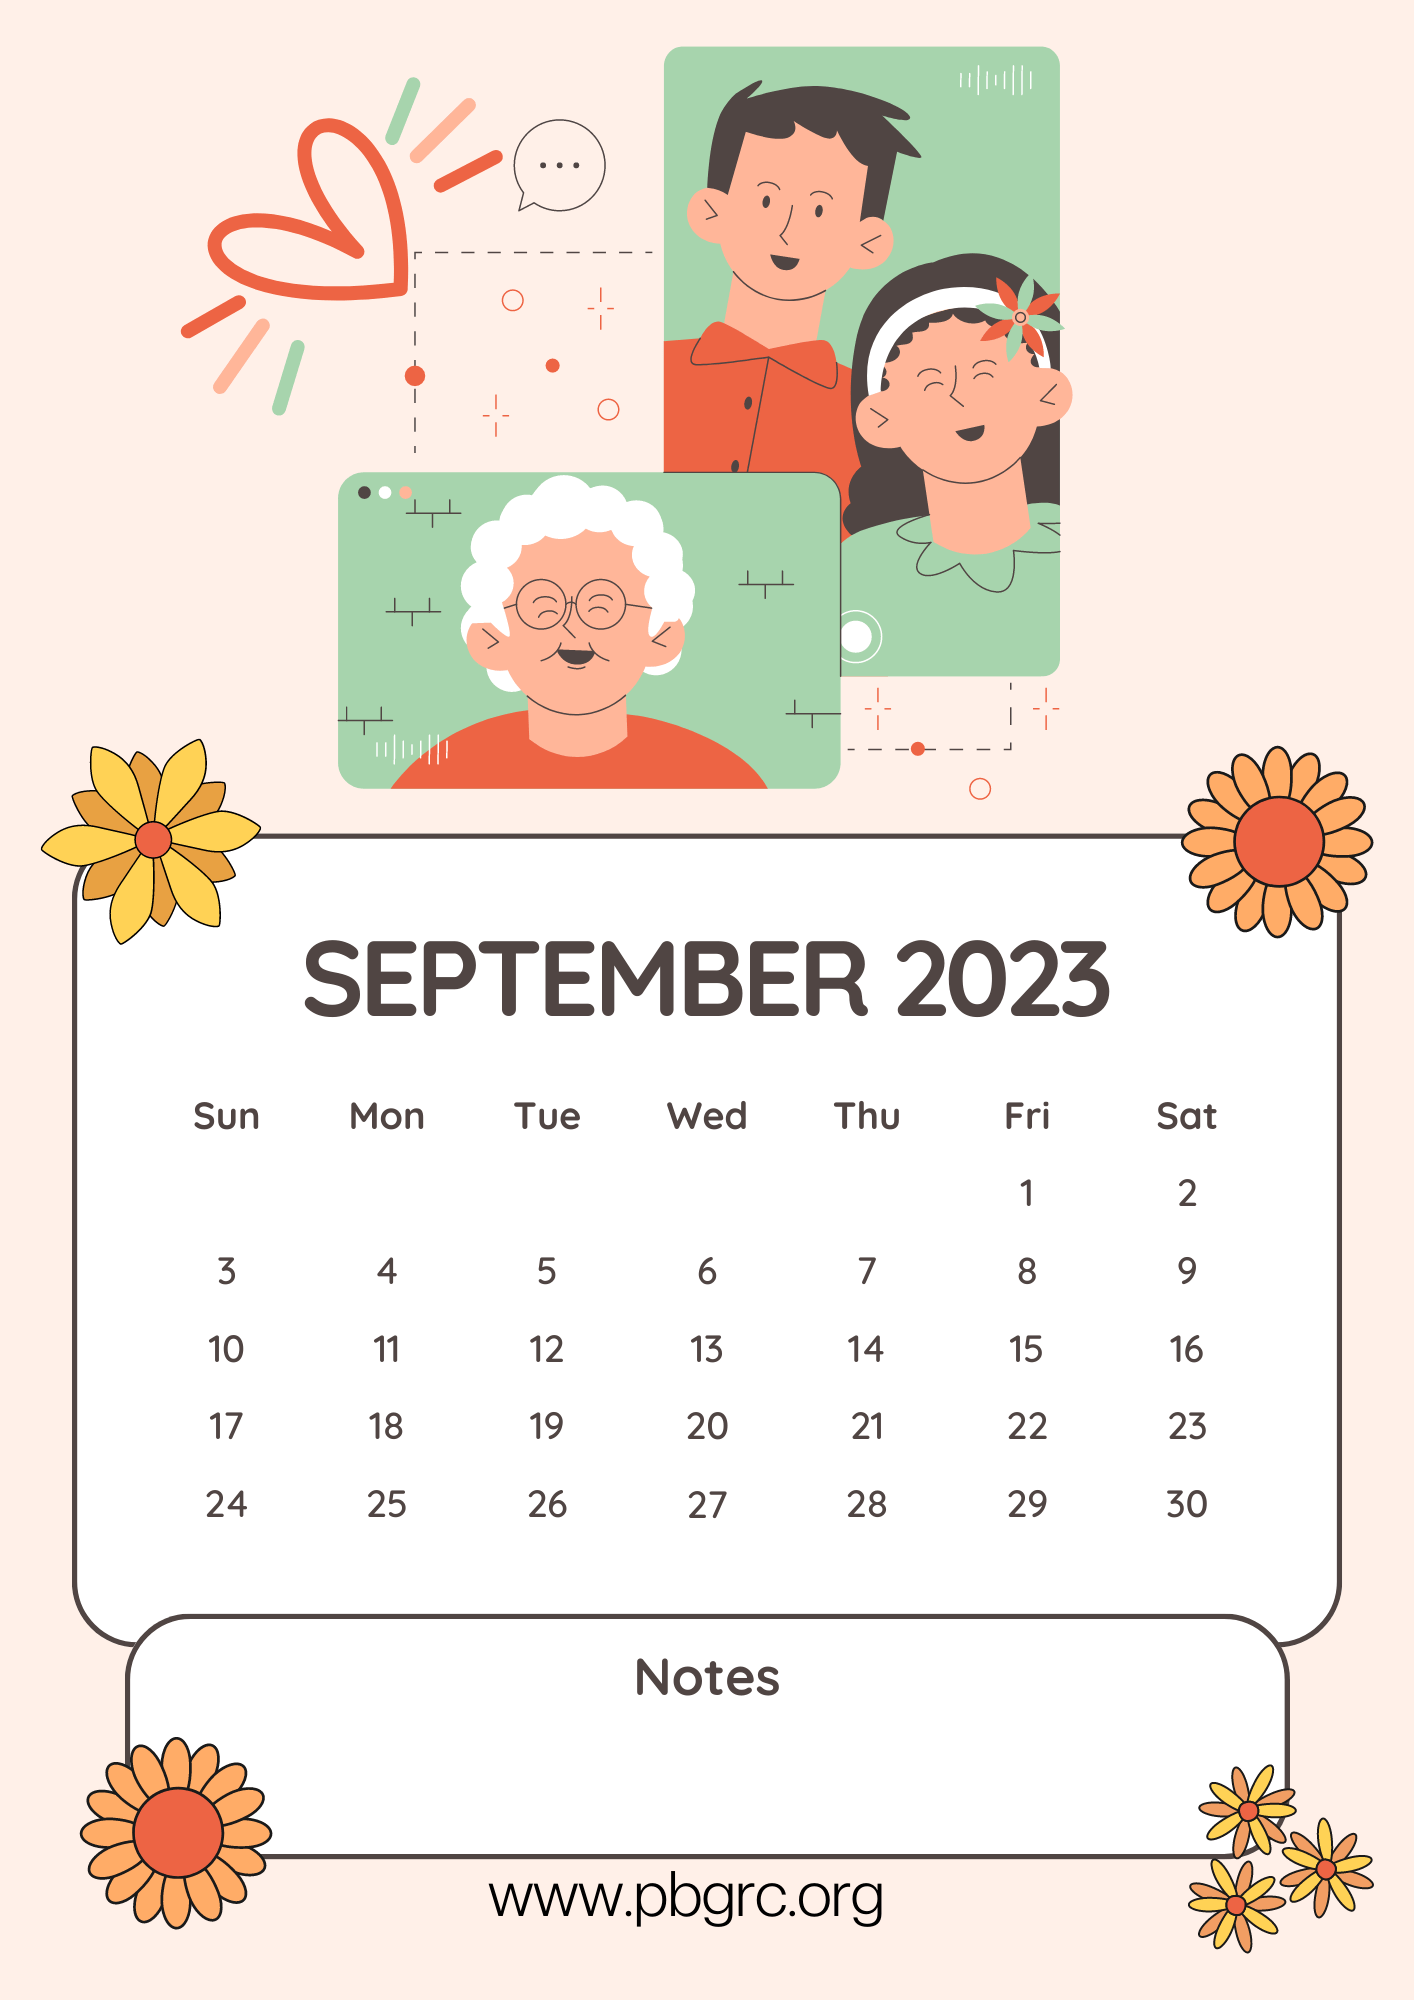 September 2023 Aesthetic Calendar Wallpaper